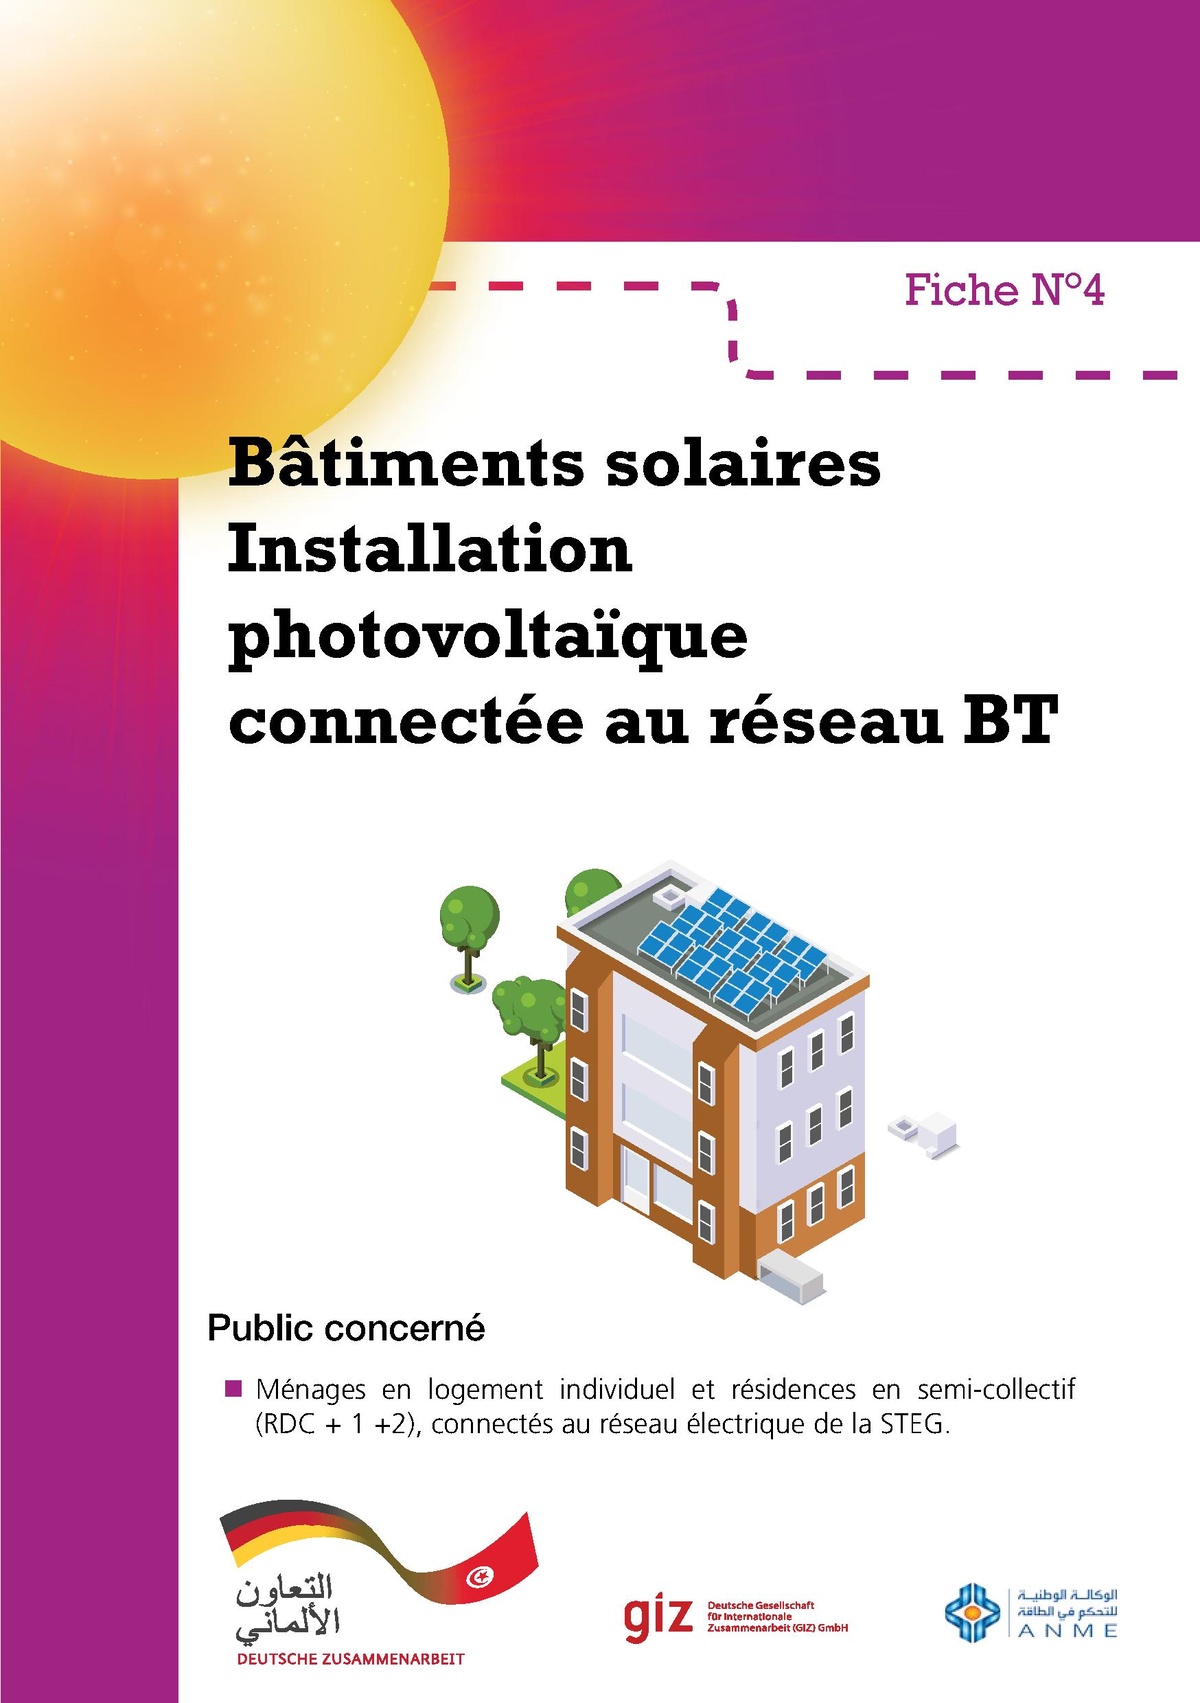 Installation photovoltaïque raccordée au réseau — Solarpedia